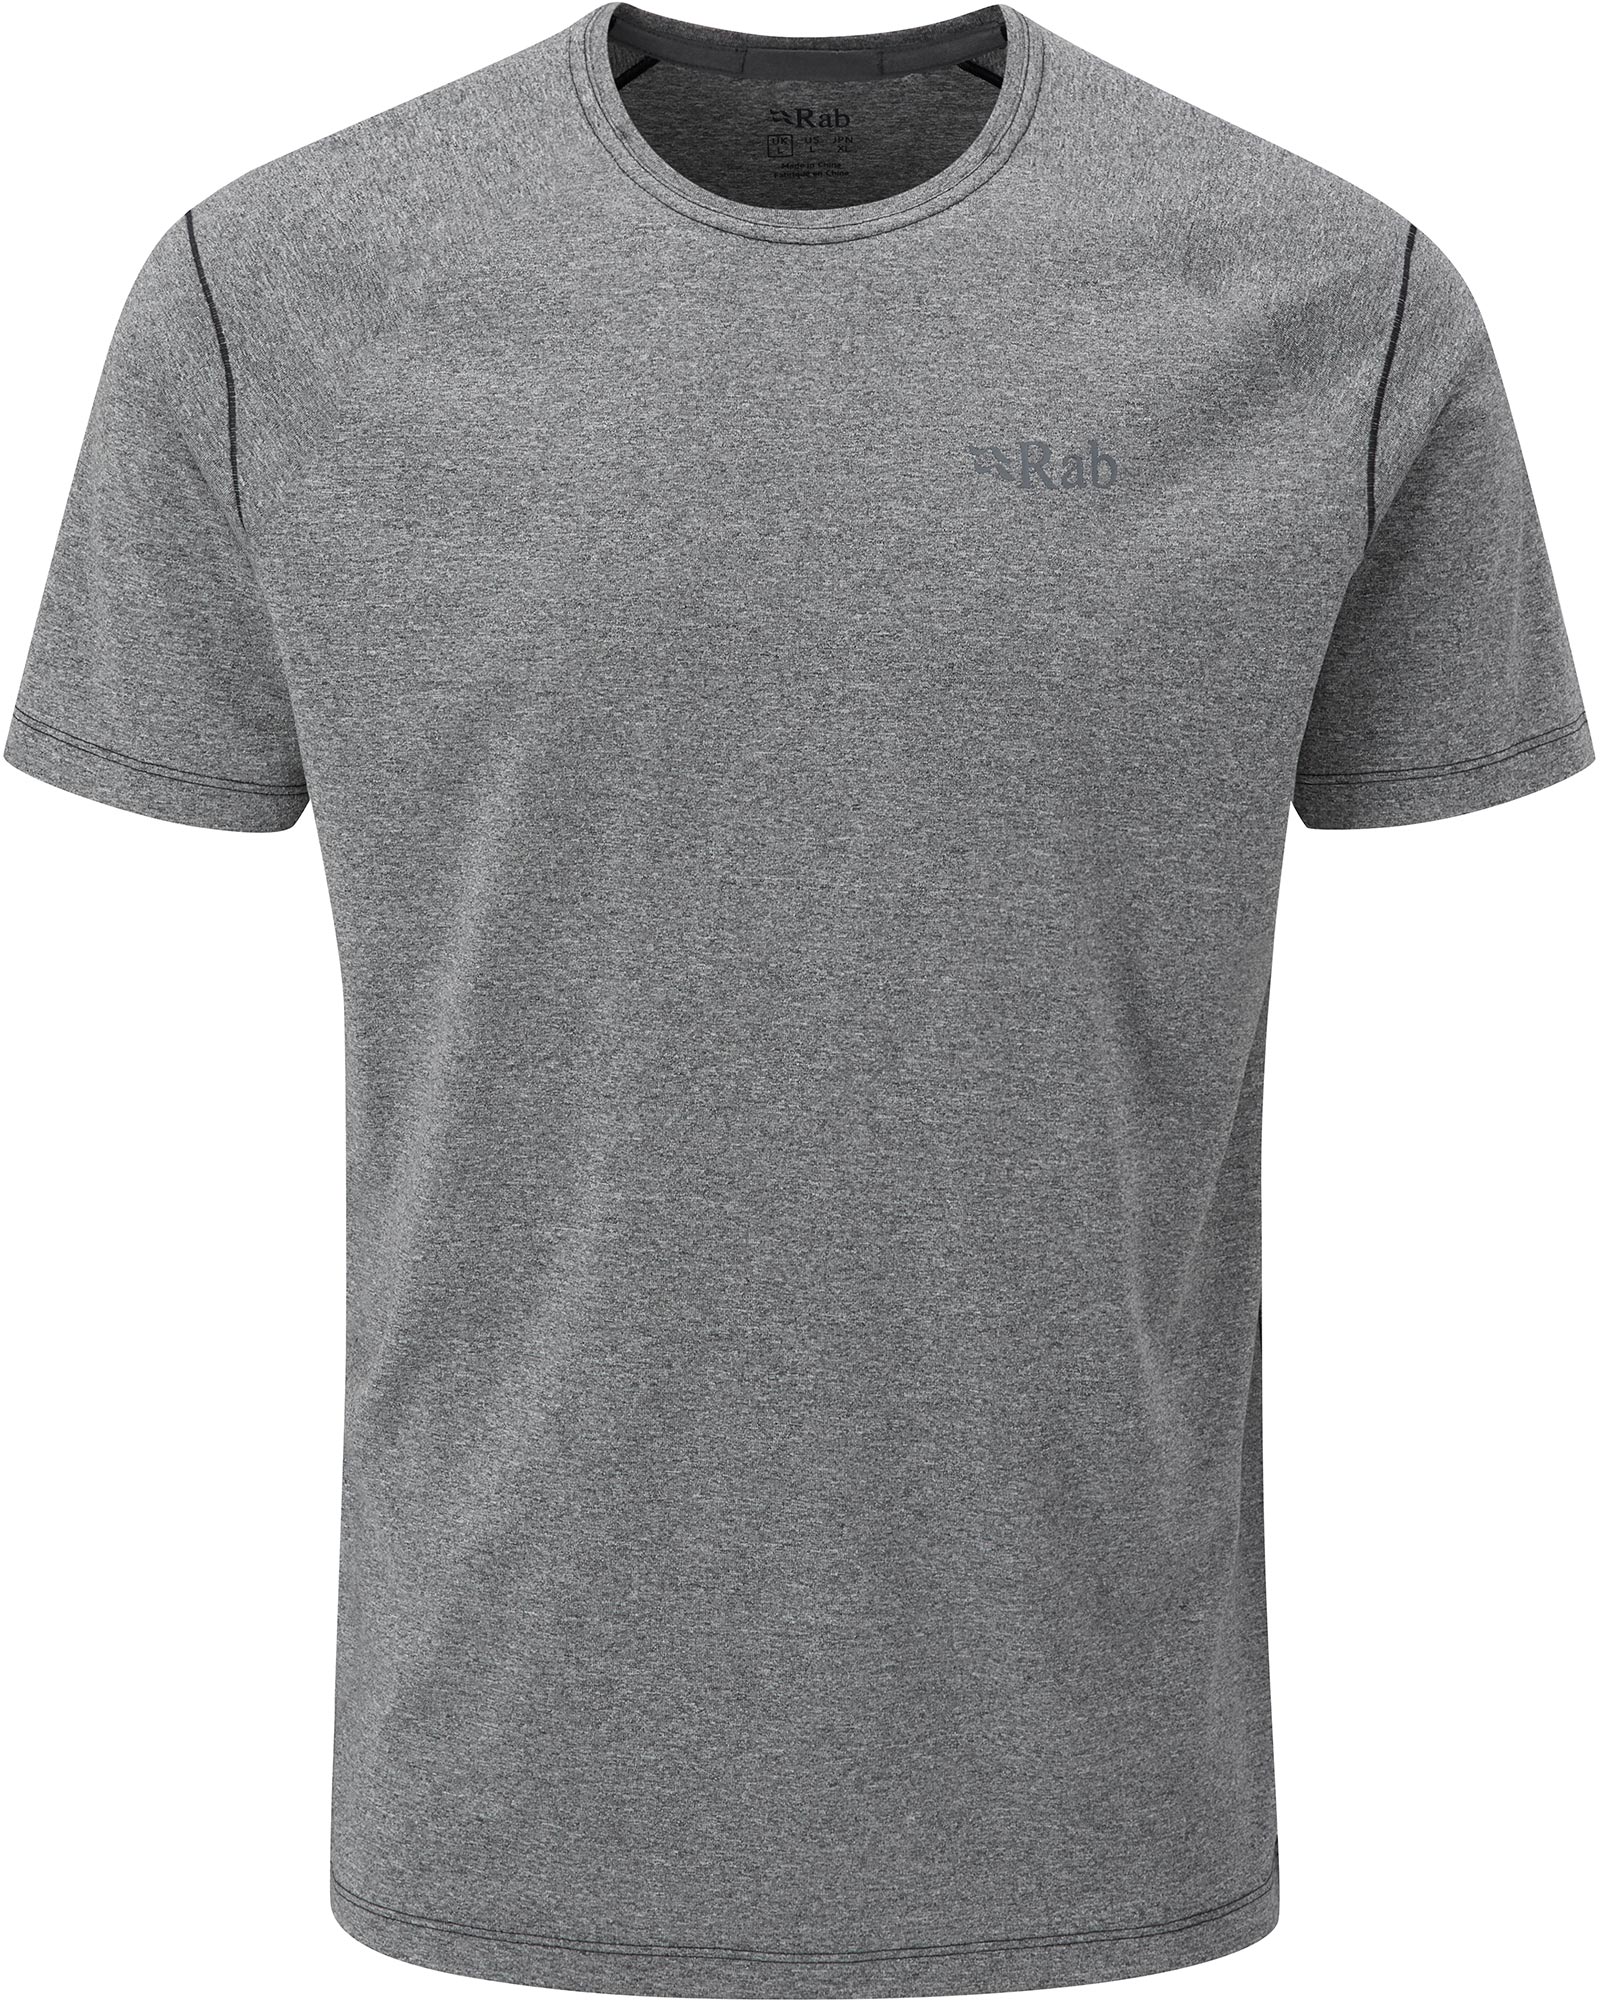 Rab Mantle Men’s T Shirt - Beluga Marl XL